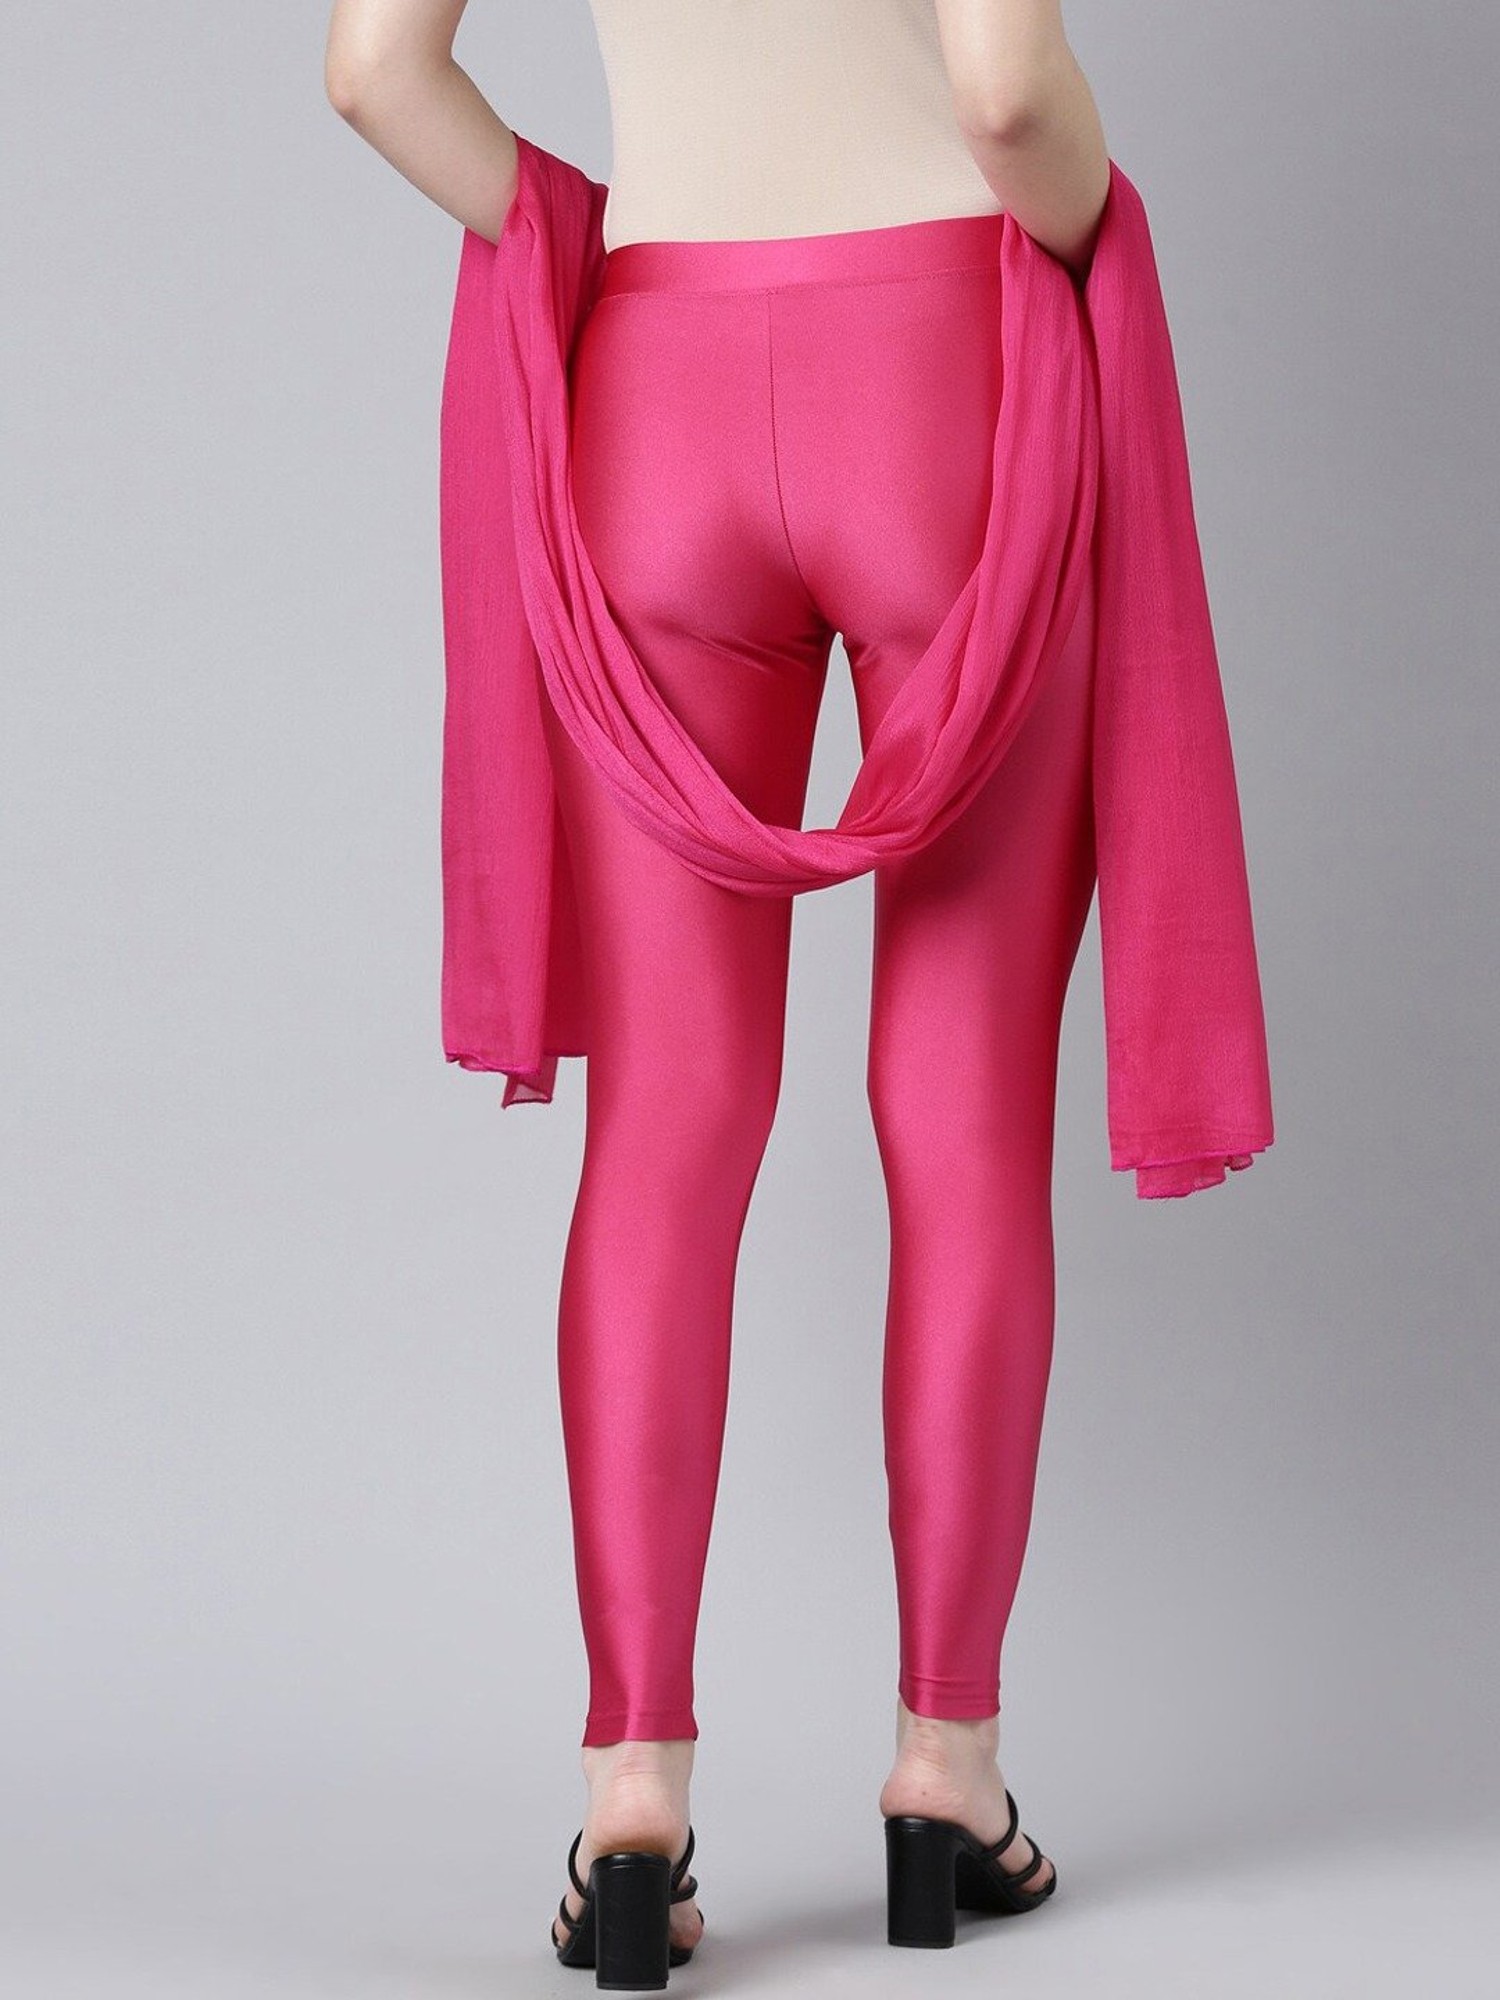 Buy Kryptic Baby Pink Leggings for Women's Online @ Tata CLiQ